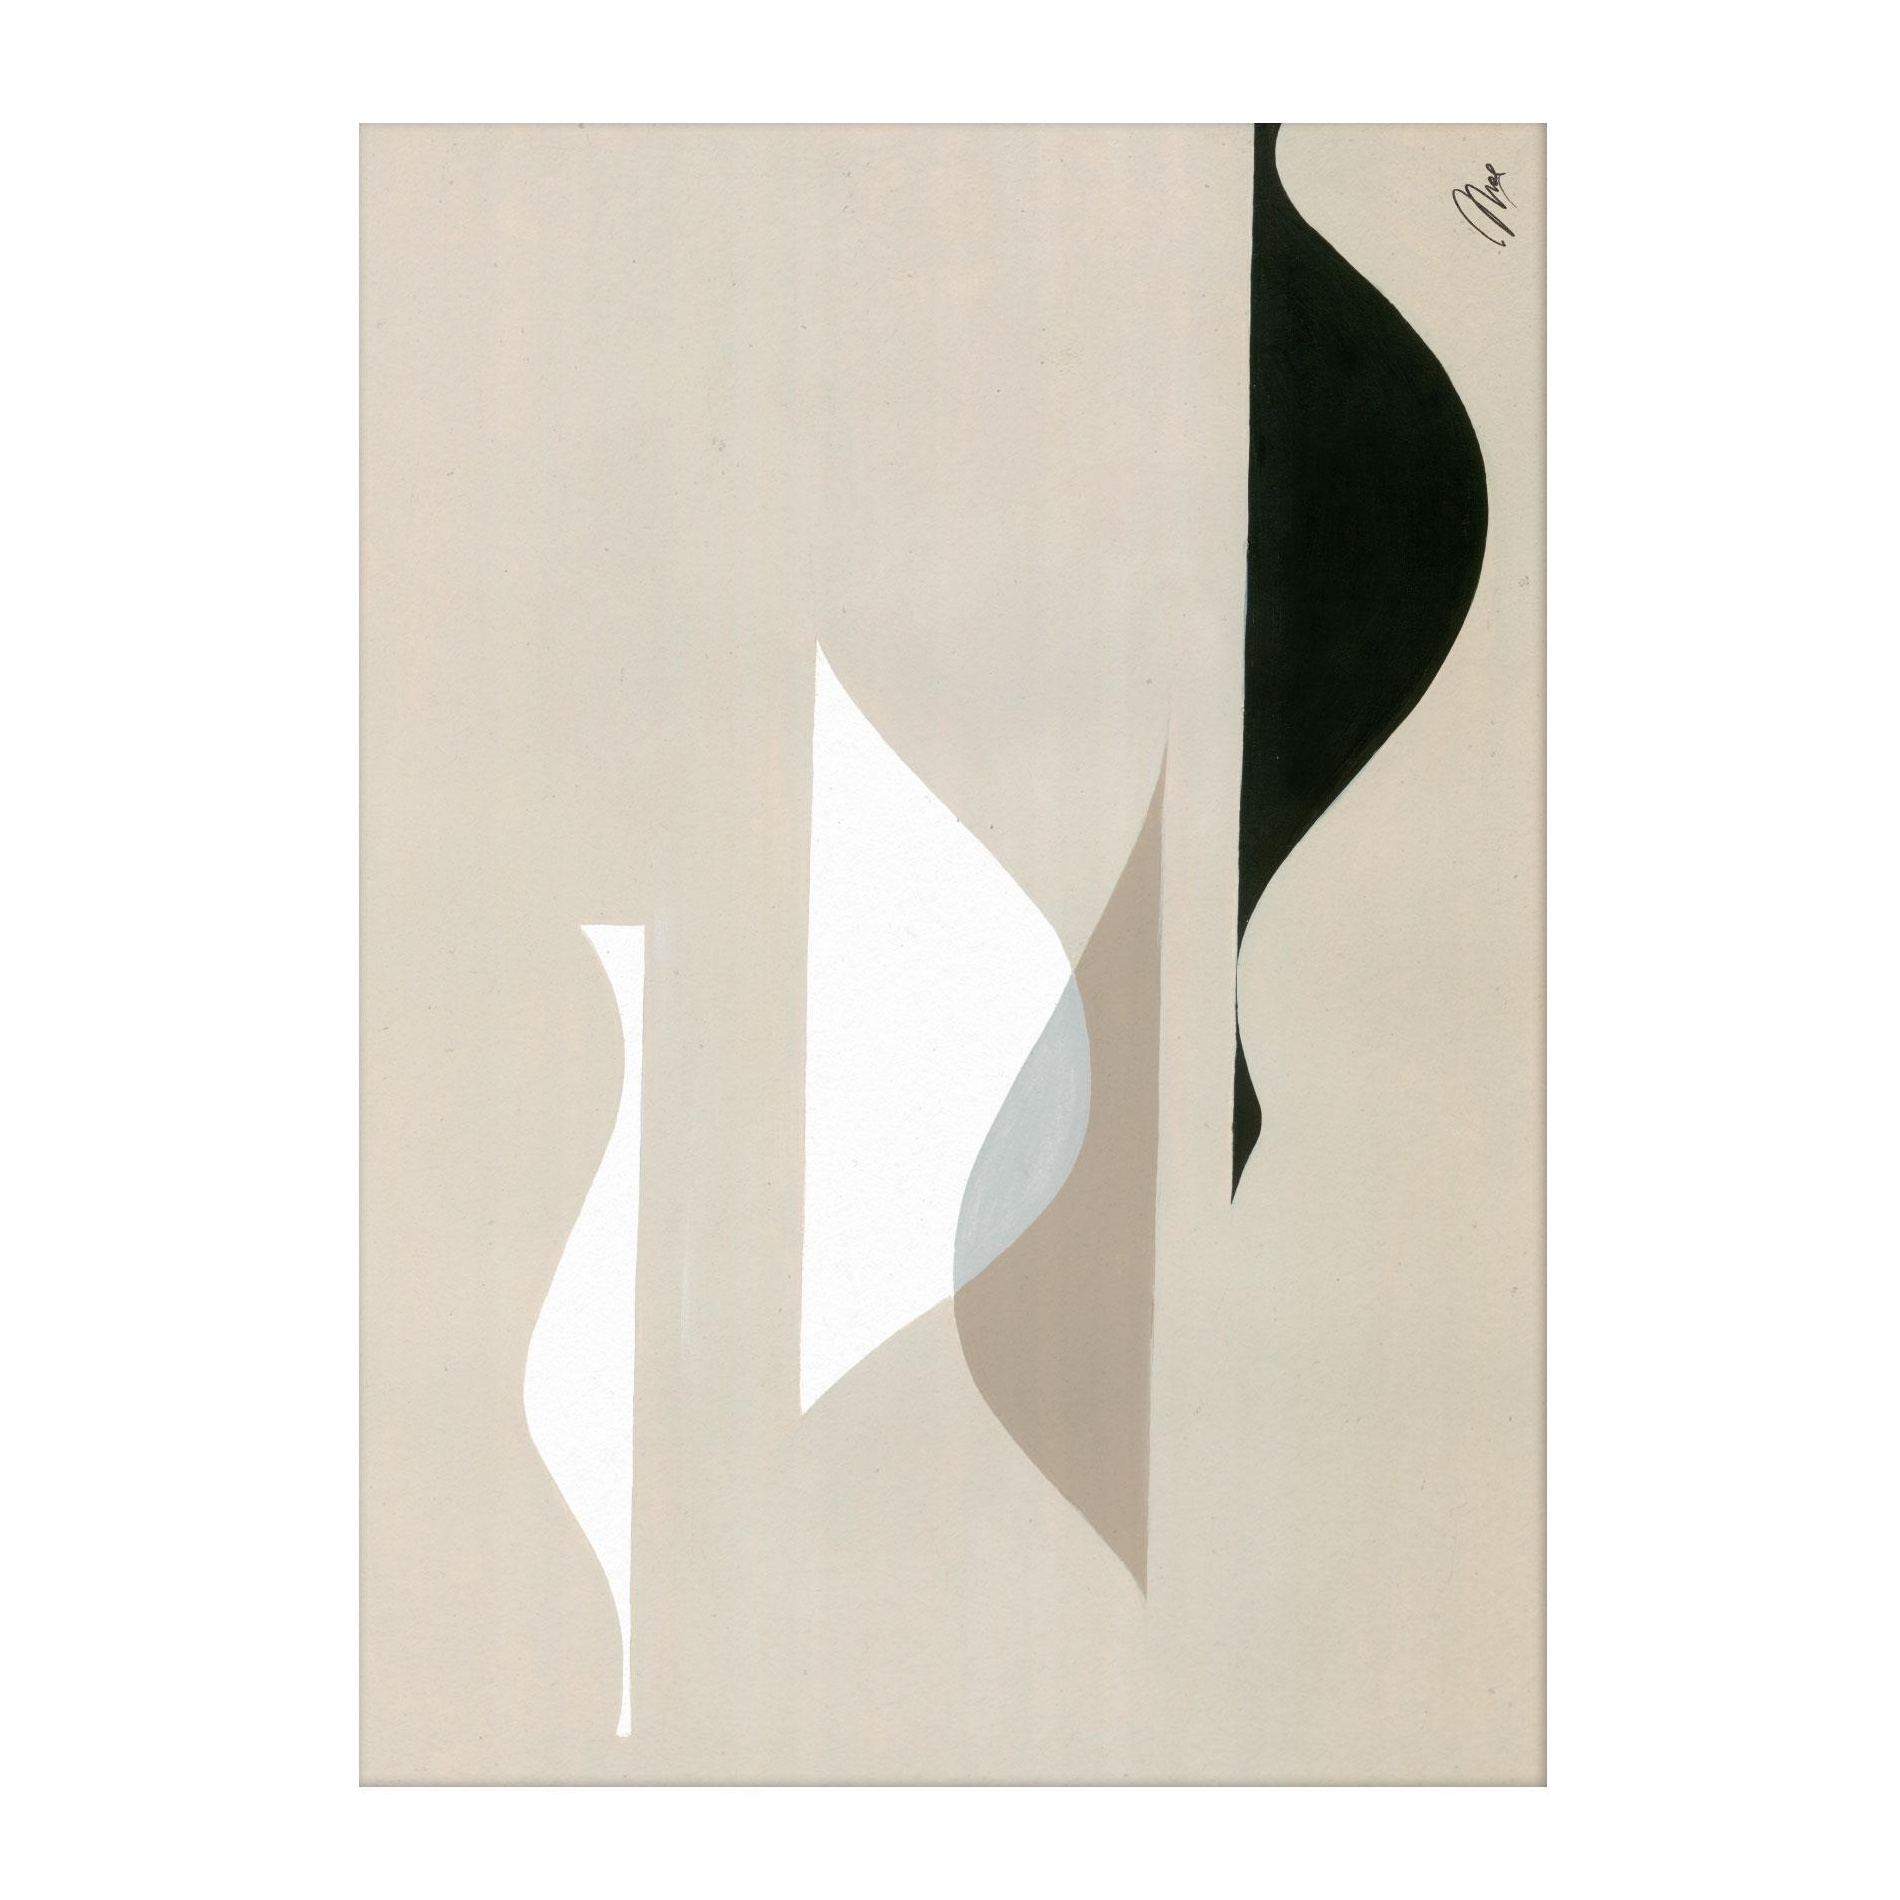 Paper Collective - Music 01 Kunstdruck 50x70cm - beige, weiß, schwarz/BxH 50x70cm von Paper Collective